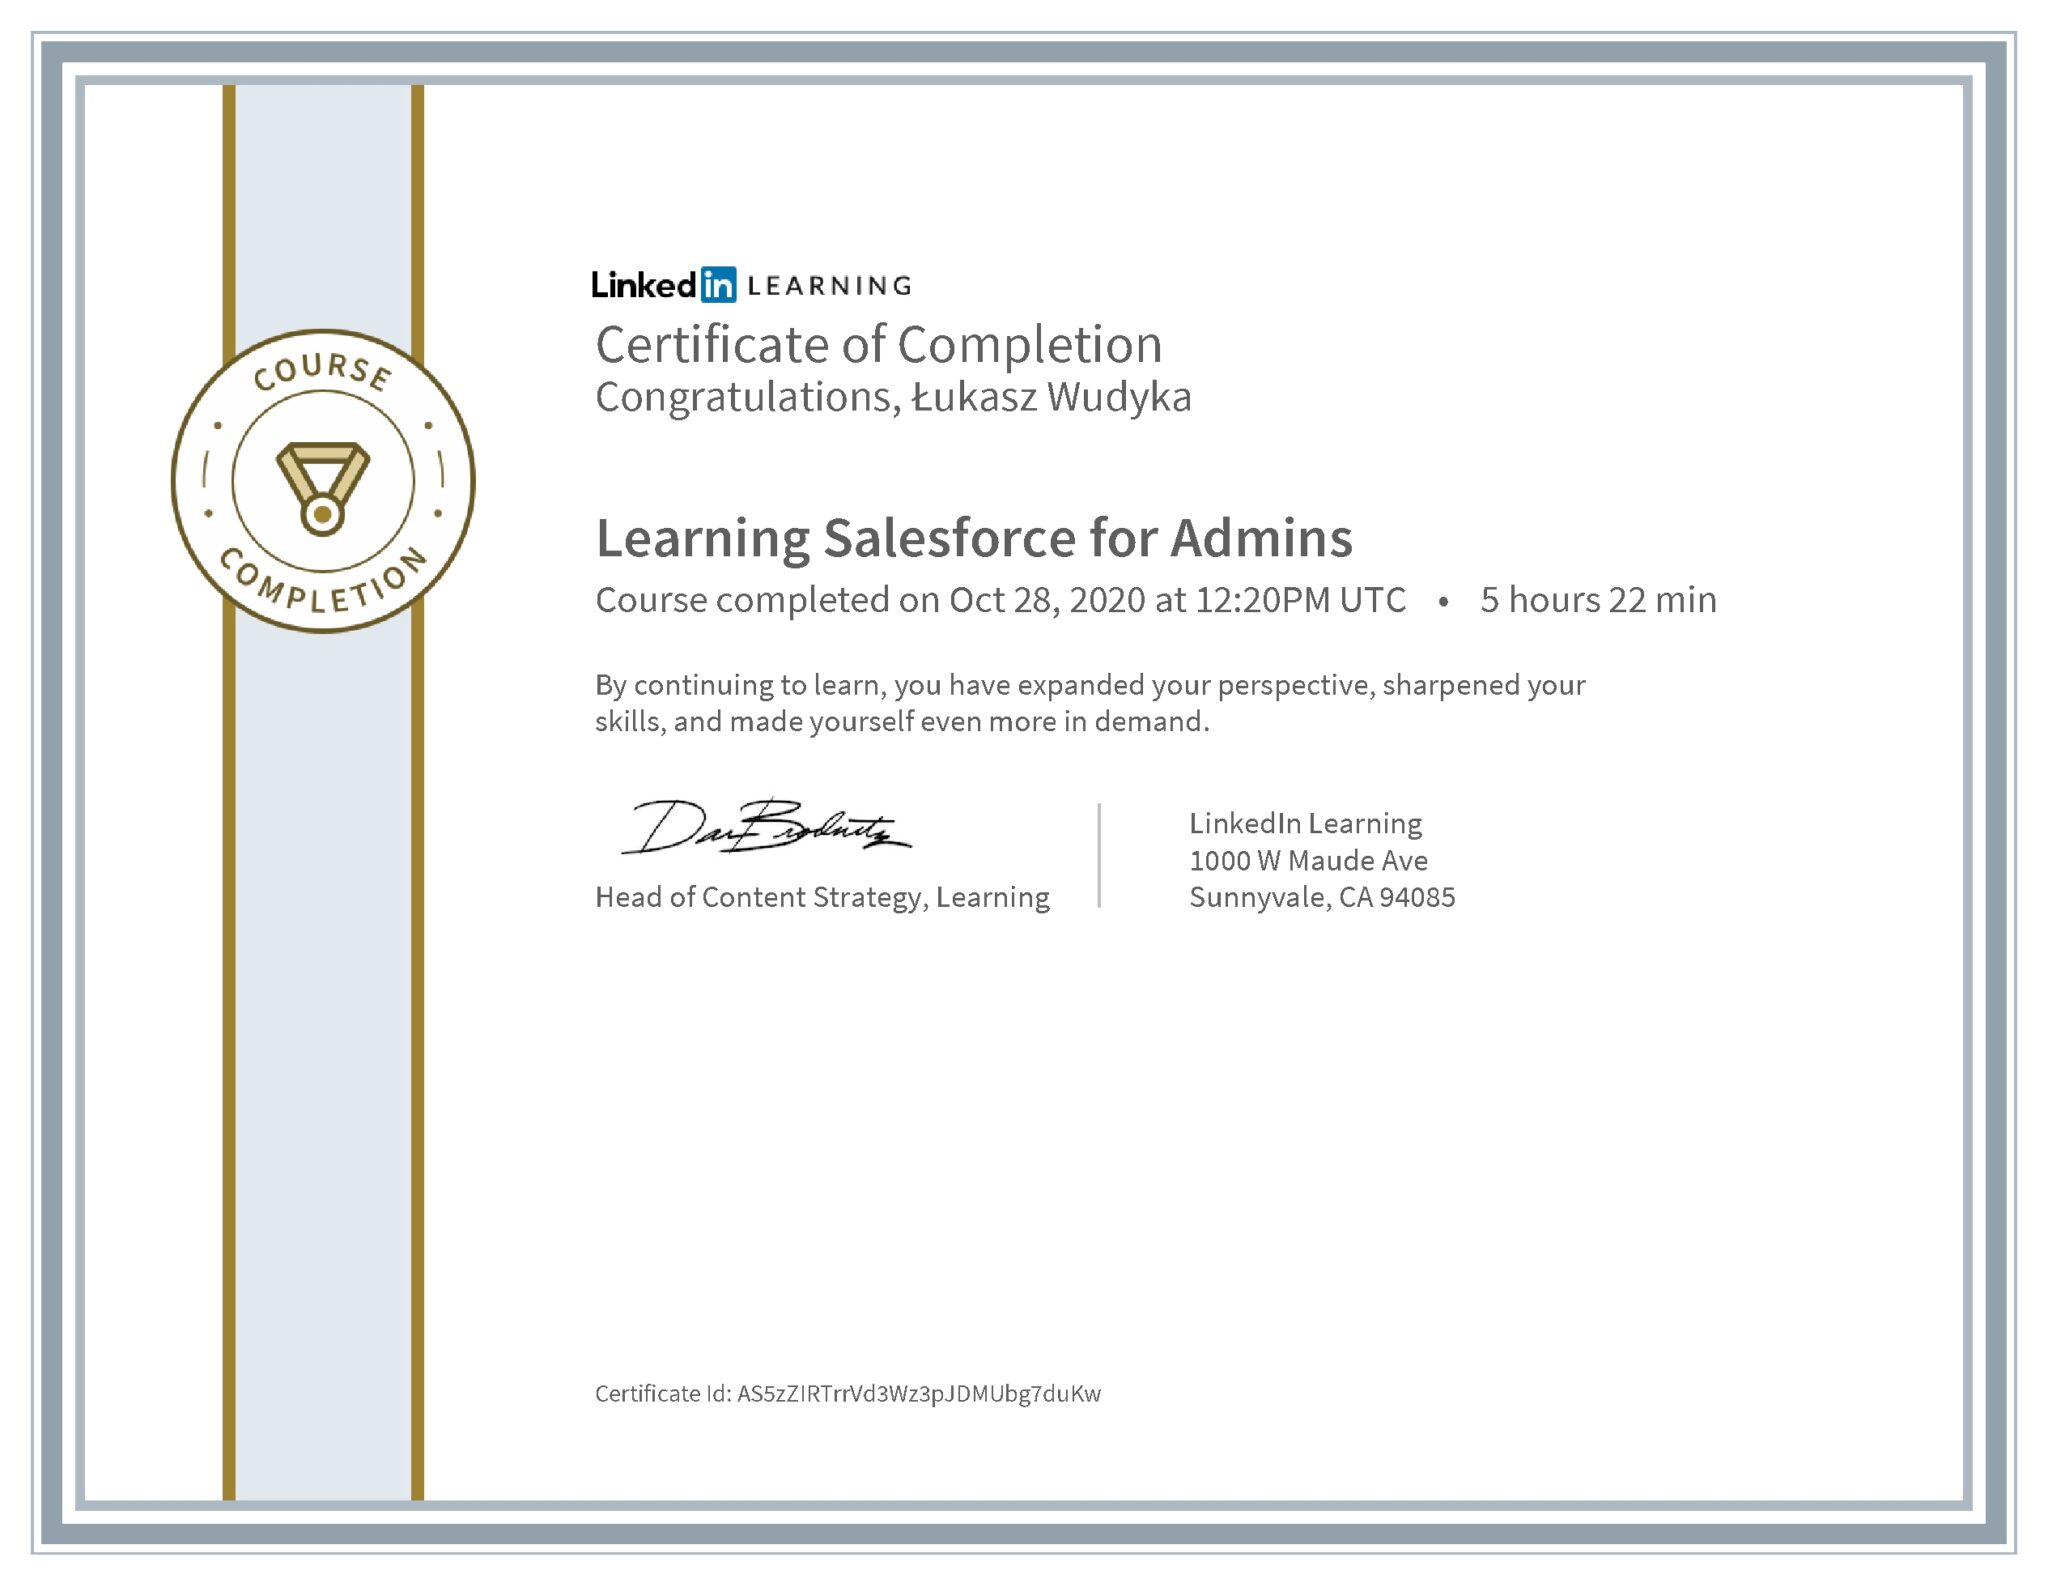 Łukasz Wudyka certyfikat LinkedIn Learning Salesforce for Admins